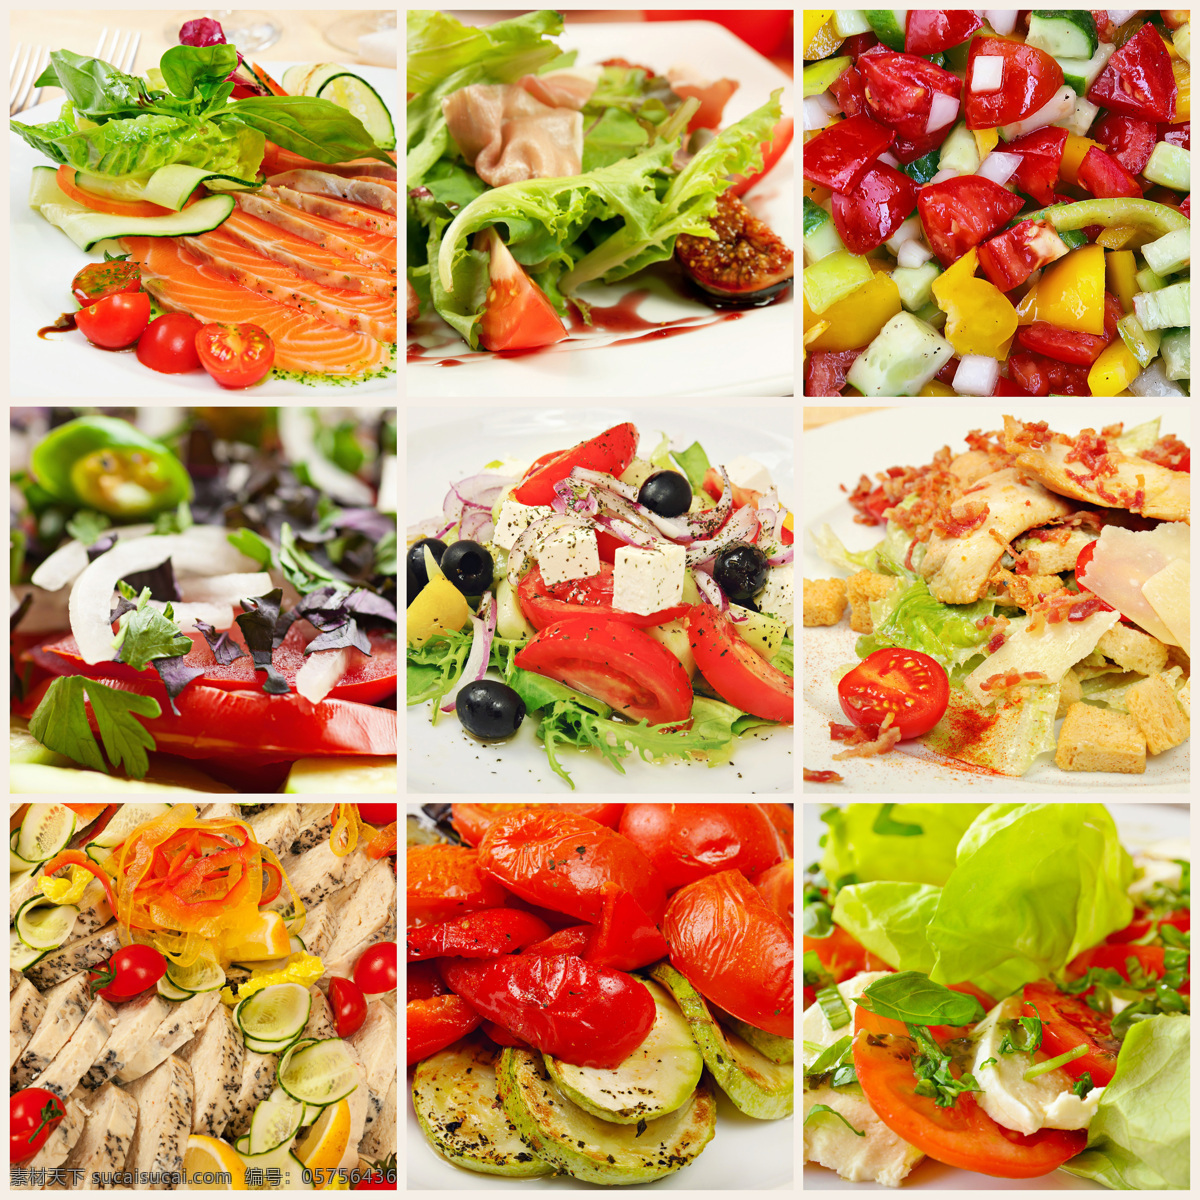 各种 蔬菜 美食 各种蔬菜美食 食物 美味 餐厅美食 食品 蔬菜图片 餐饮美食